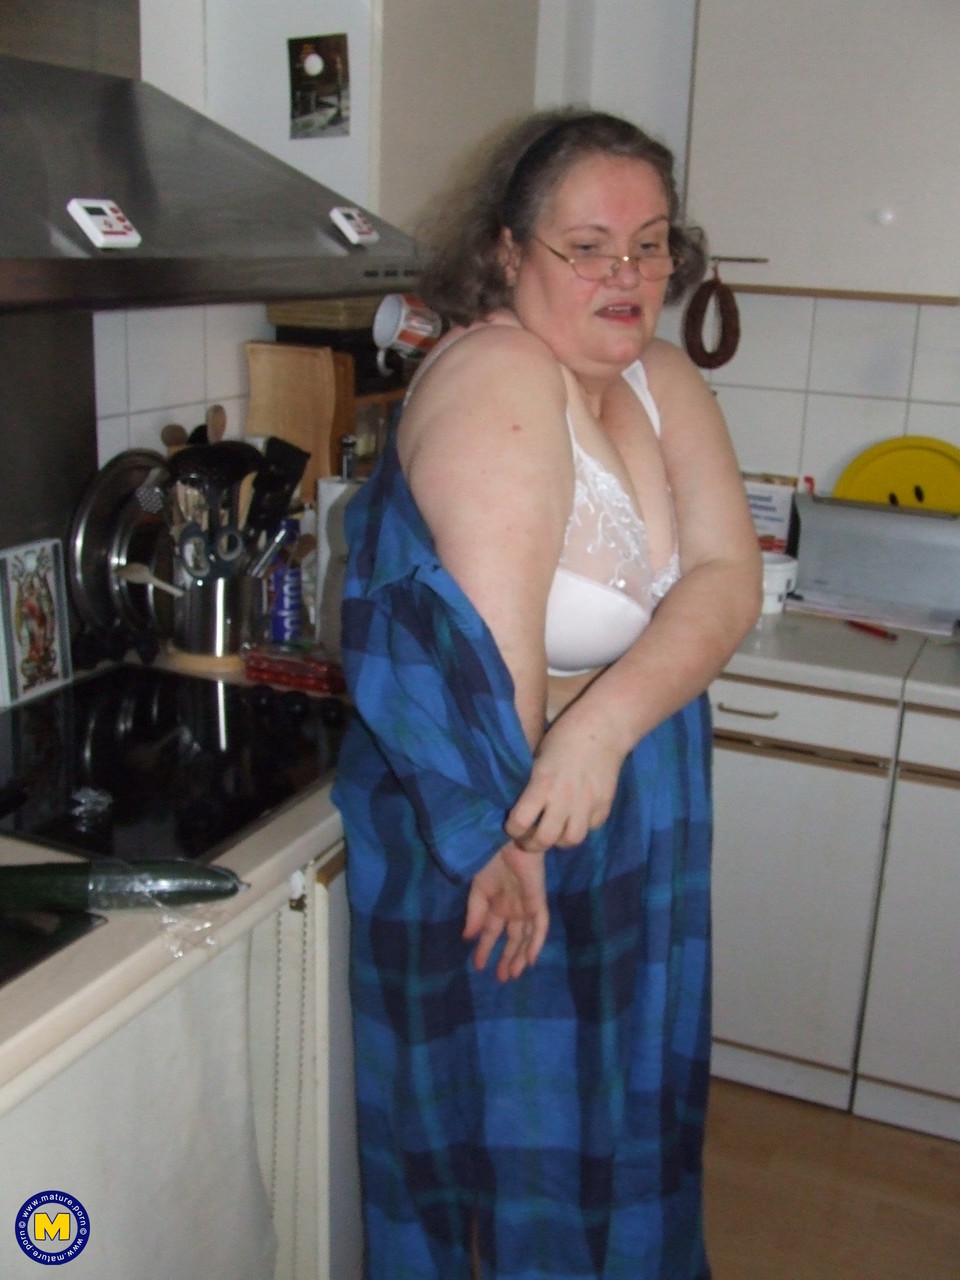 Fat mature housewife Birgid masturbates with a cucumber in the kitchen porno foto #423883218 | Mature NL Pics, Birgid, Granny, mobiele porno